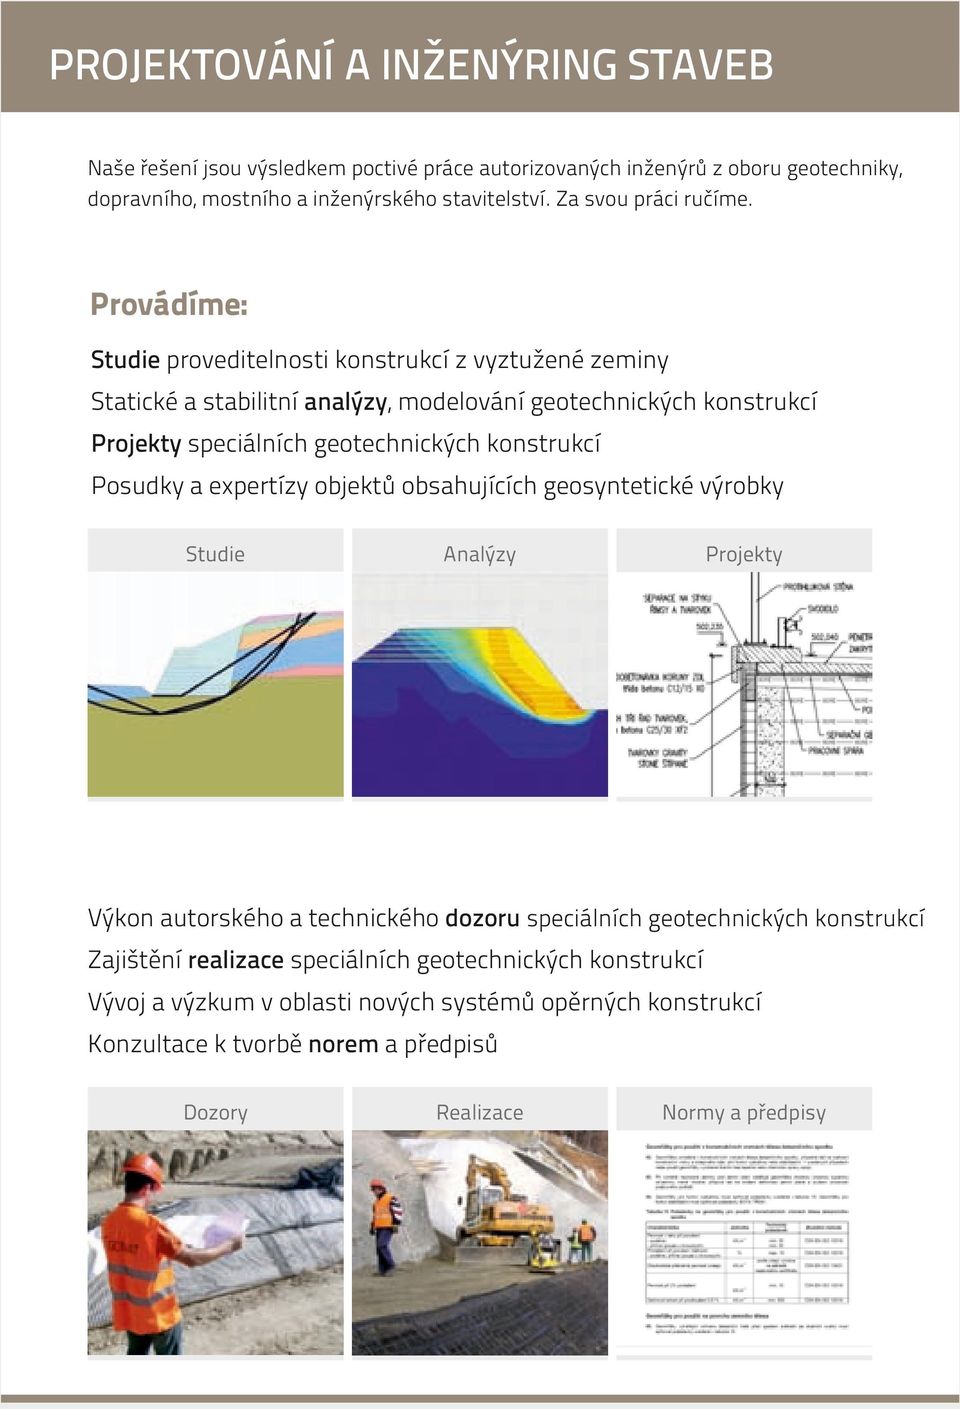 Provádíme: Studie proveditelnosti konstrukcí z vyztužené zeminy Statické a stabilitní analýzy, modelování geotechnických konstrukcí Projekty speciálních geotechnických konstrukcí